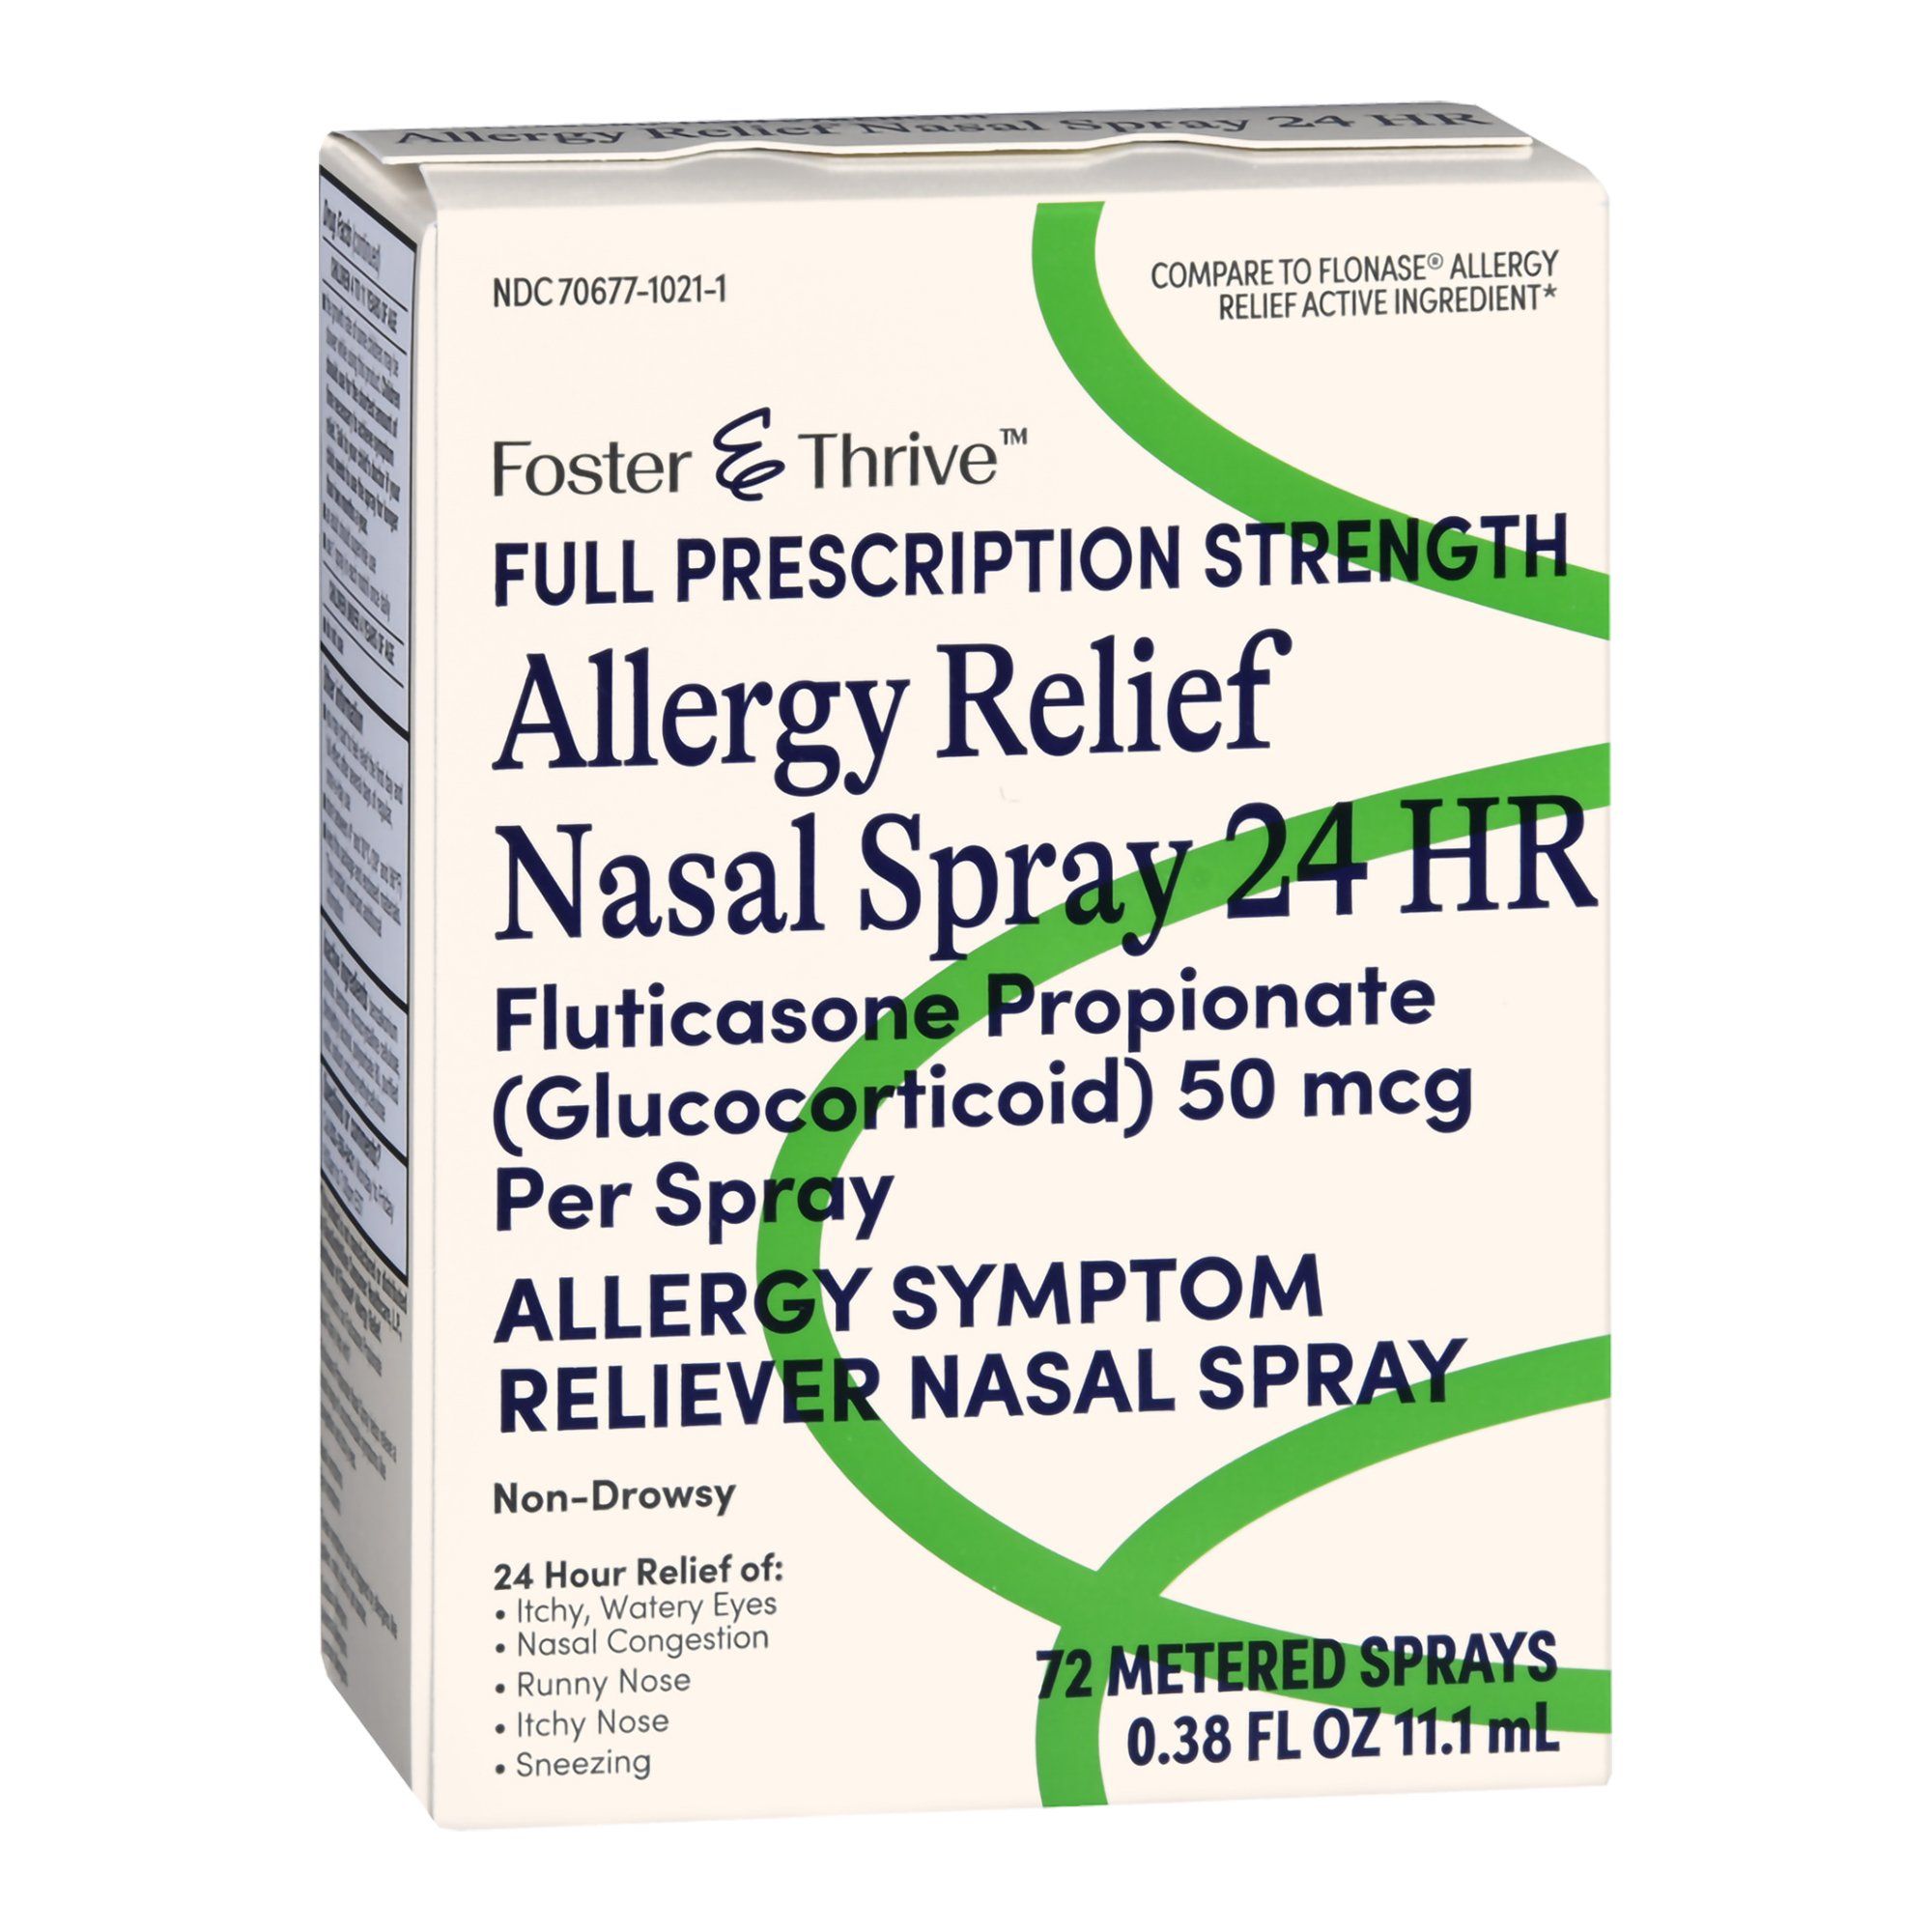 Foster & Thrive 24HR Allergy Relief Nasal Spray, 0.38 oz - 72 Metered Sprays